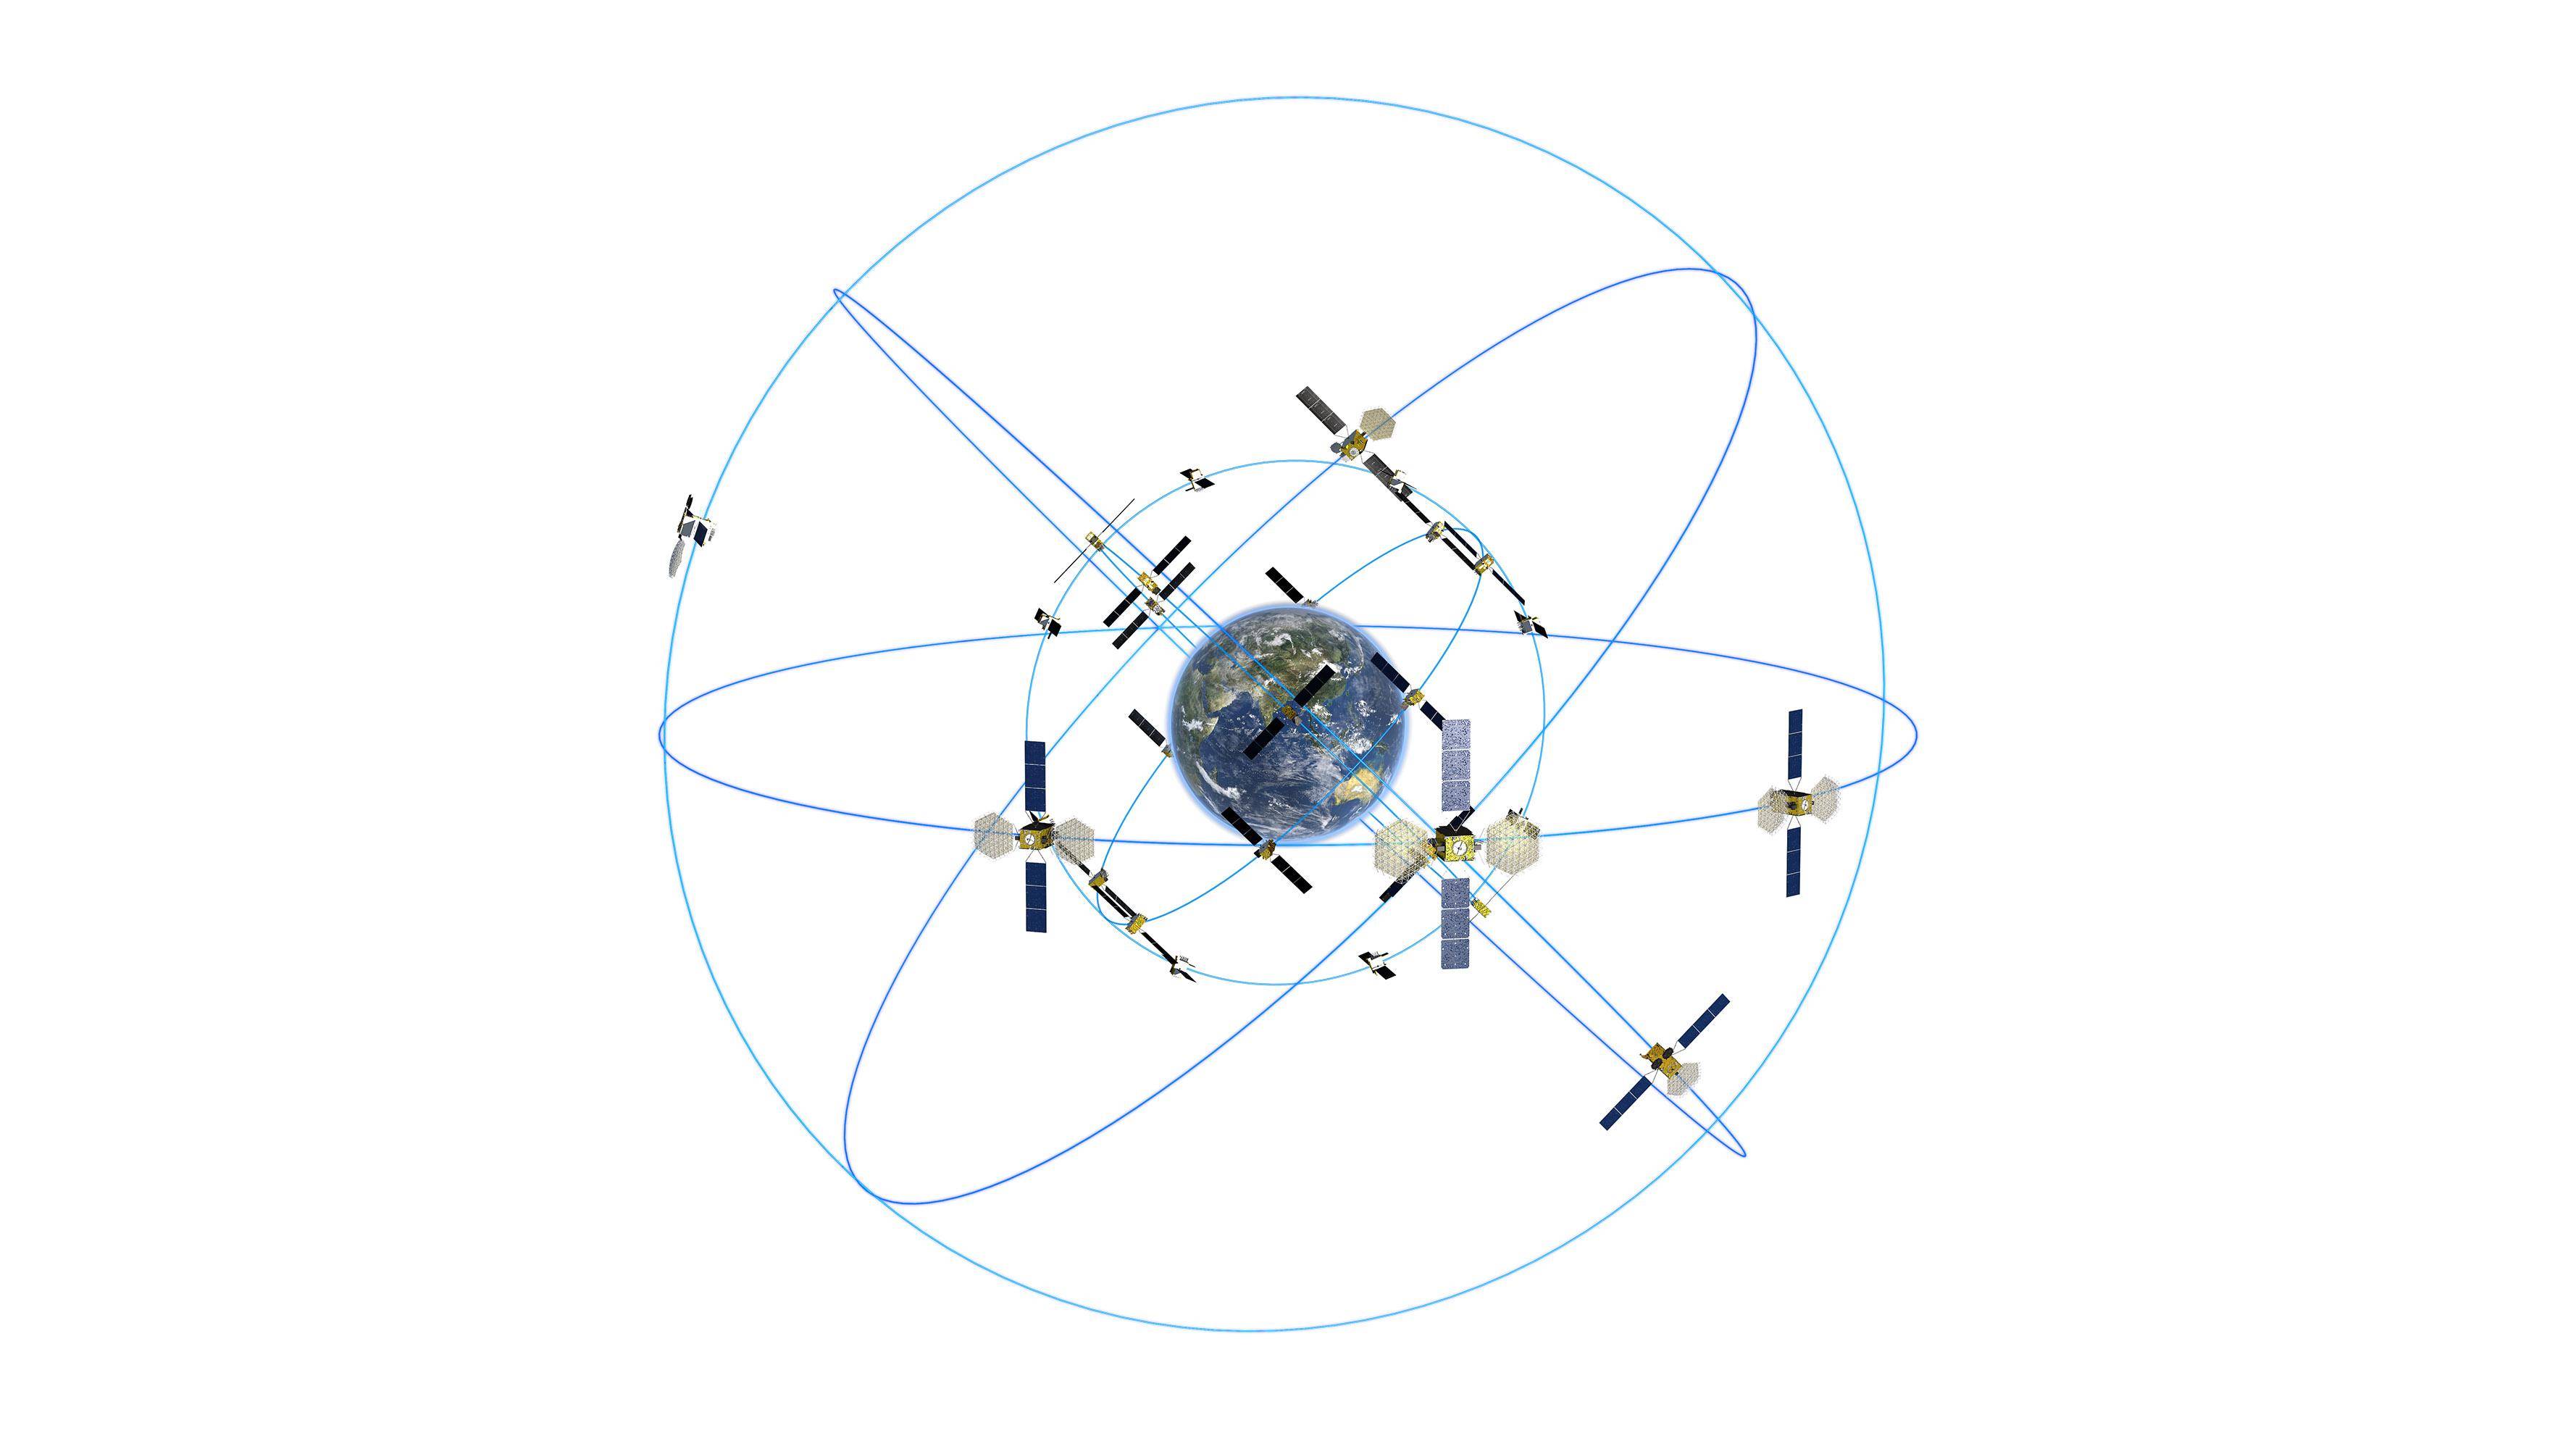 5月17日,由航天科技集团五院抓总研制的北斗卫星导航系统第56颗卫星